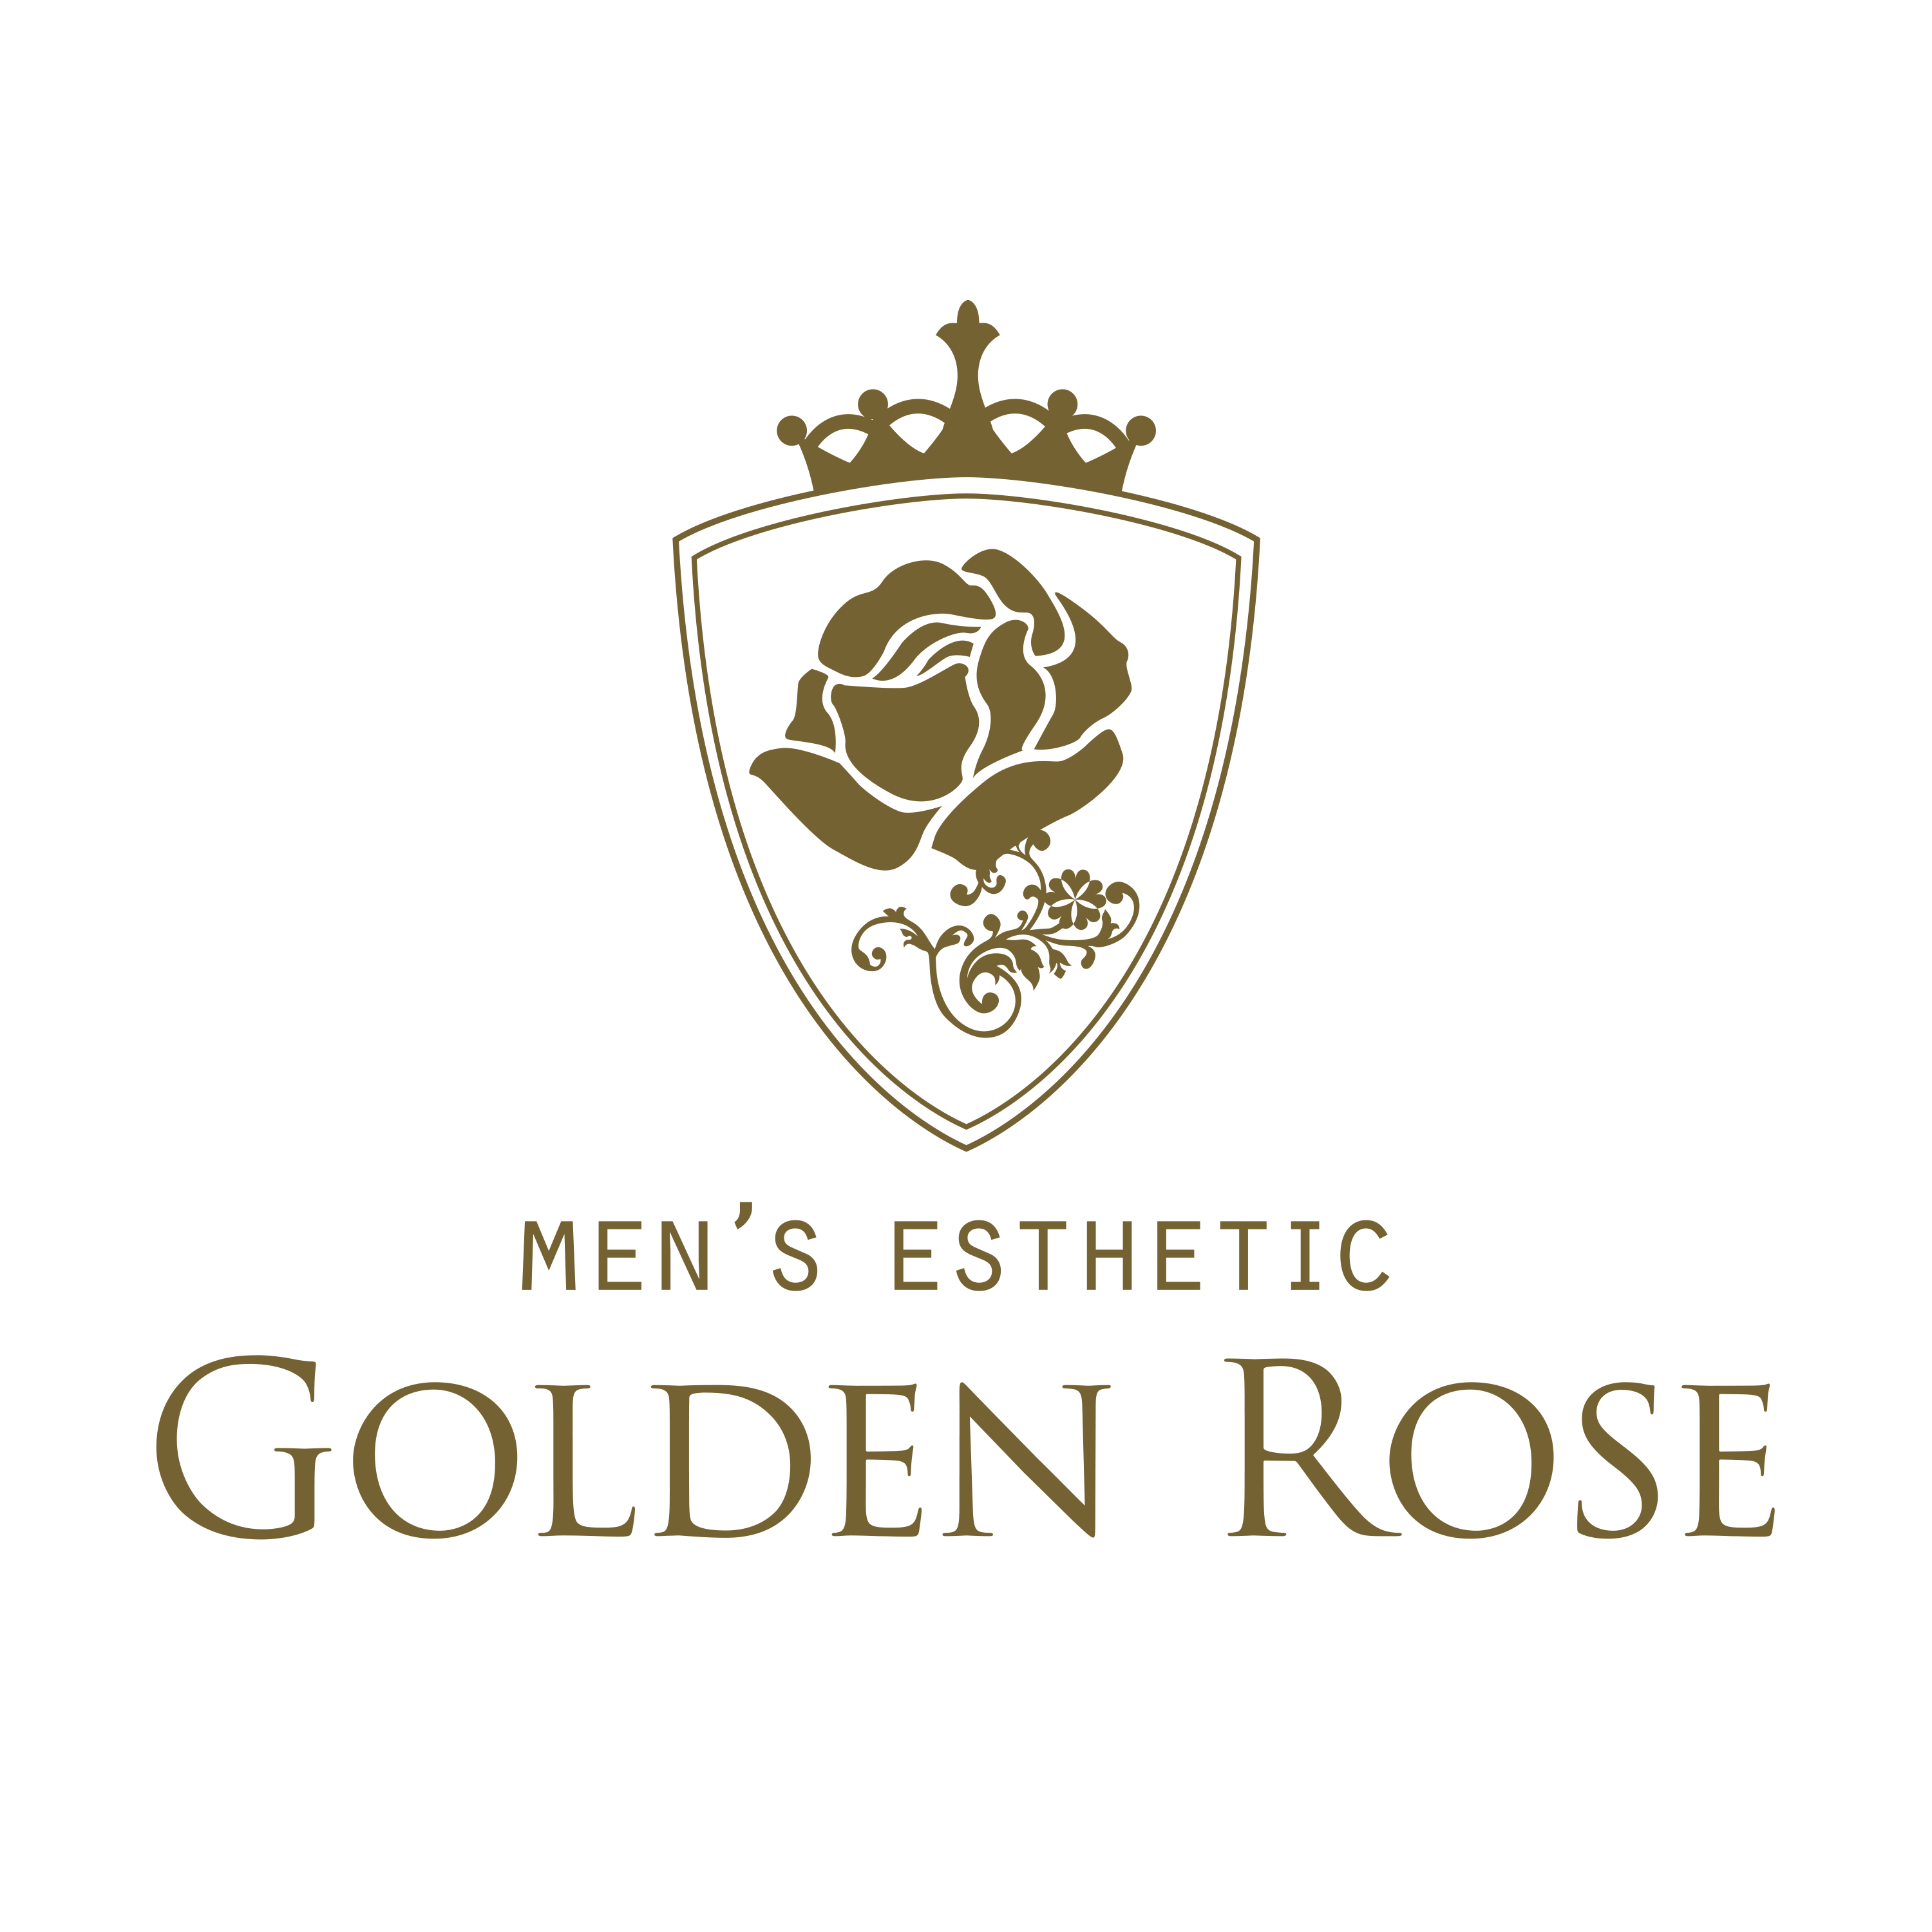 Golden Rose(ｺﾞｰﾙﾃﾞﾝﾛｰｽﾞ)